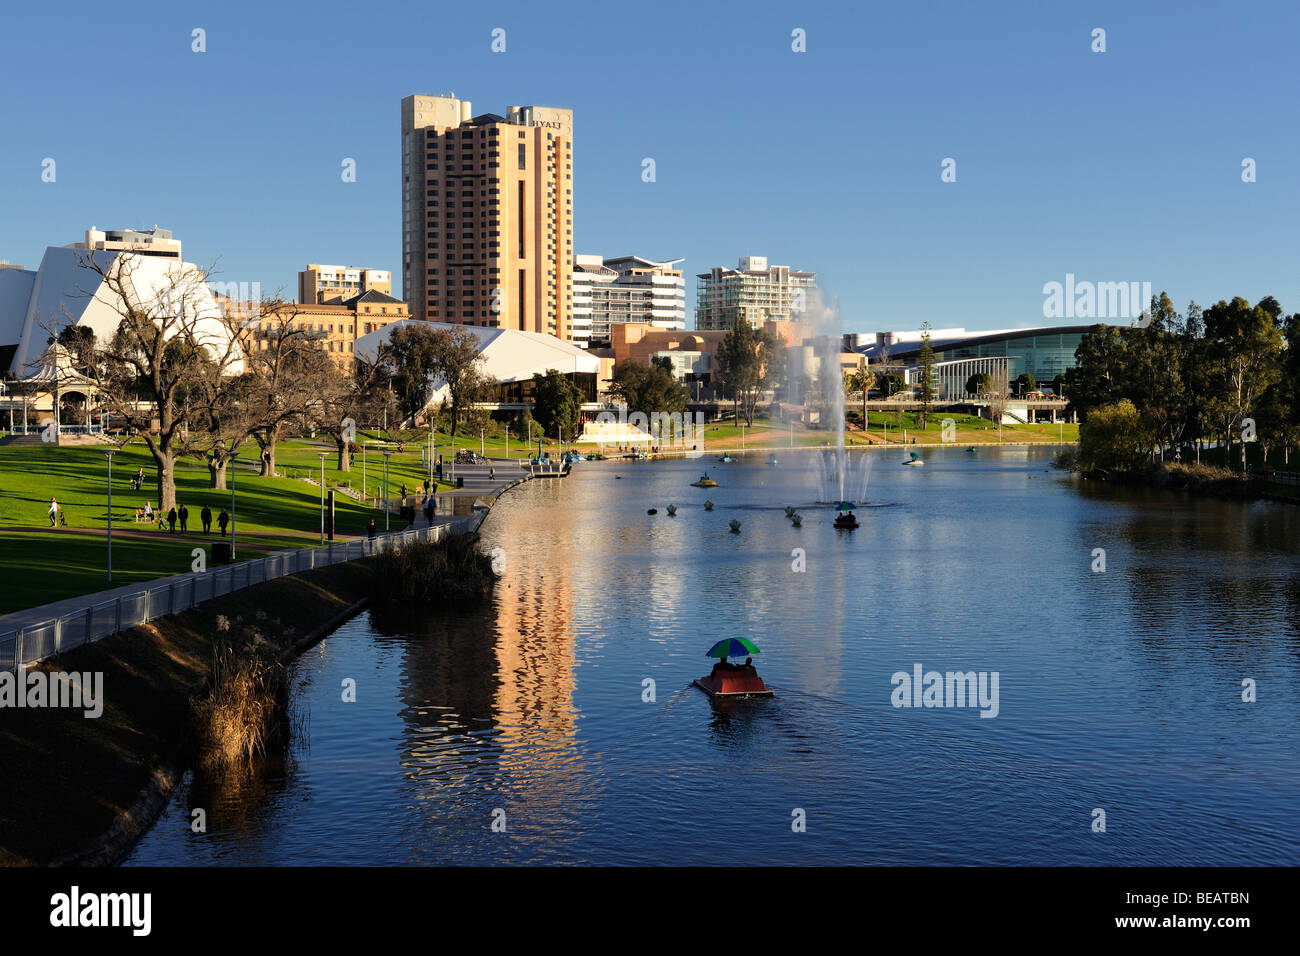 Ein Blick auf den River Torrens in Adelaide, South Australia. Der Fluss wurde hier zu einem See verbreitert. Stockfoto